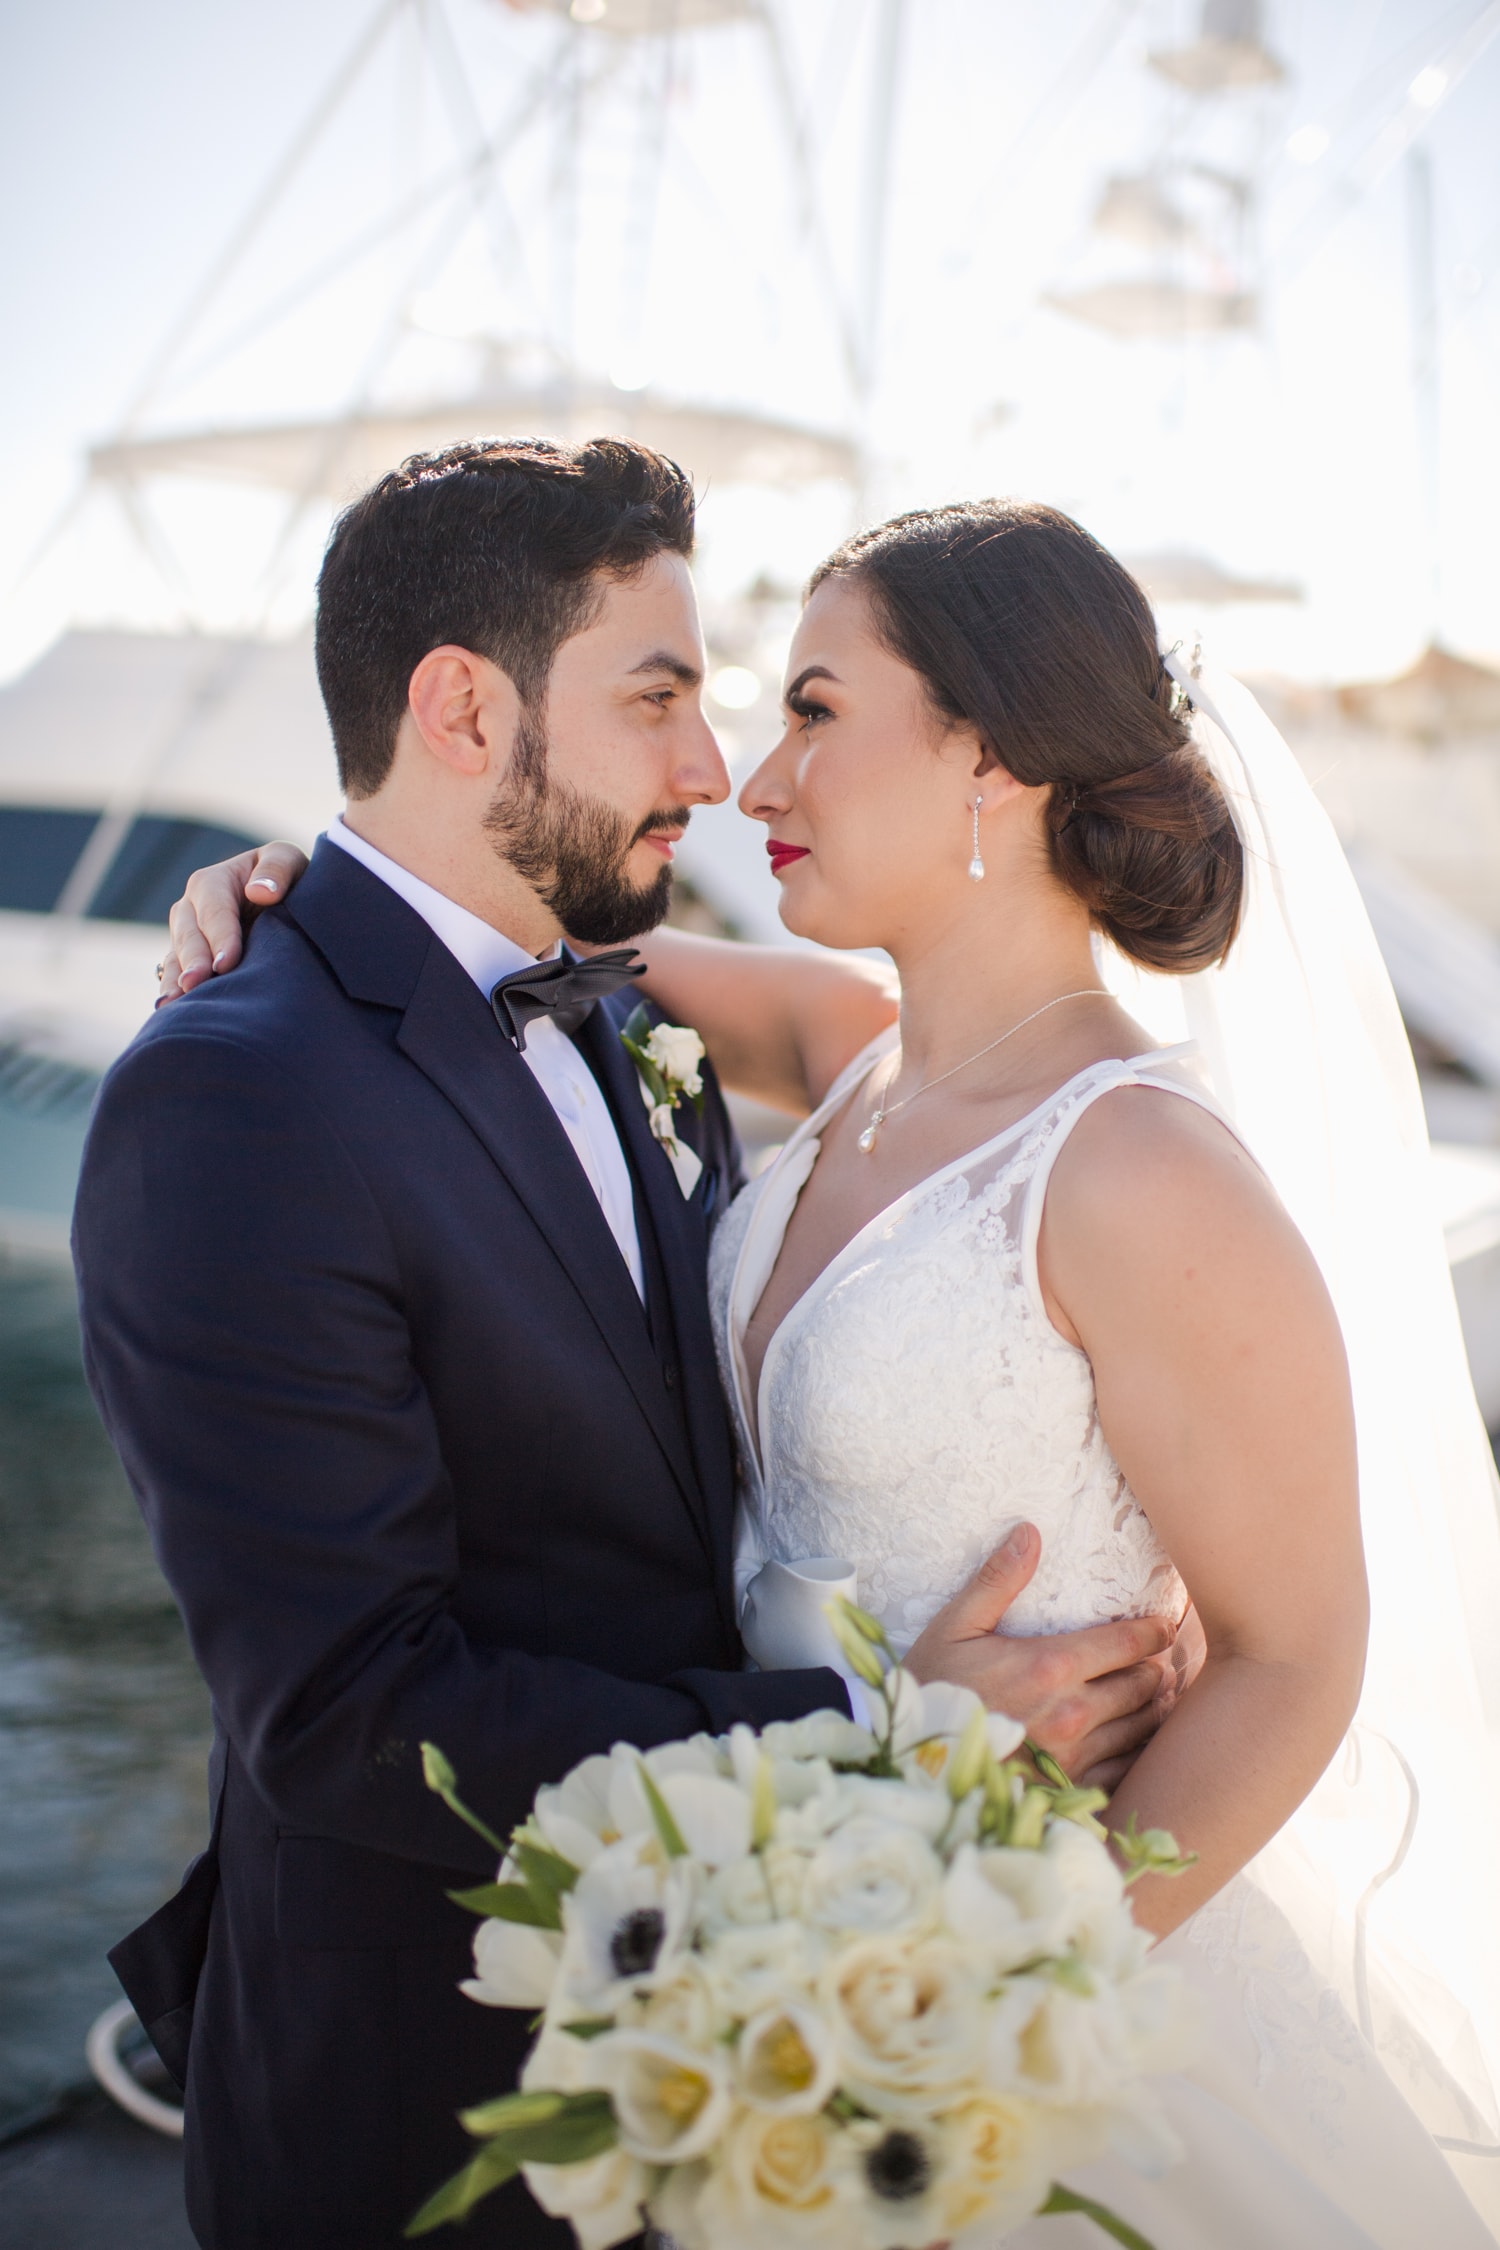 hermosas fotos de recién casados y recepción de bodas en Club Náutico de San Juan, Puerto Rico por Camille Fontanez